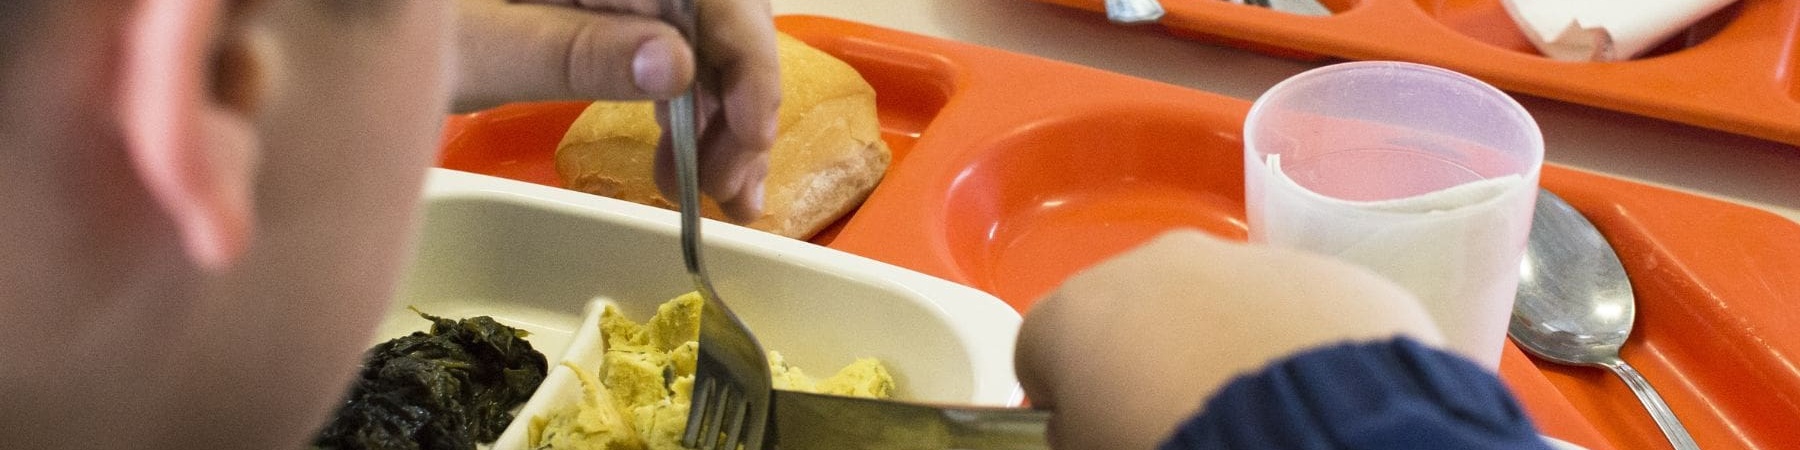 bambino di spalle che mangia in una mensa scolastica